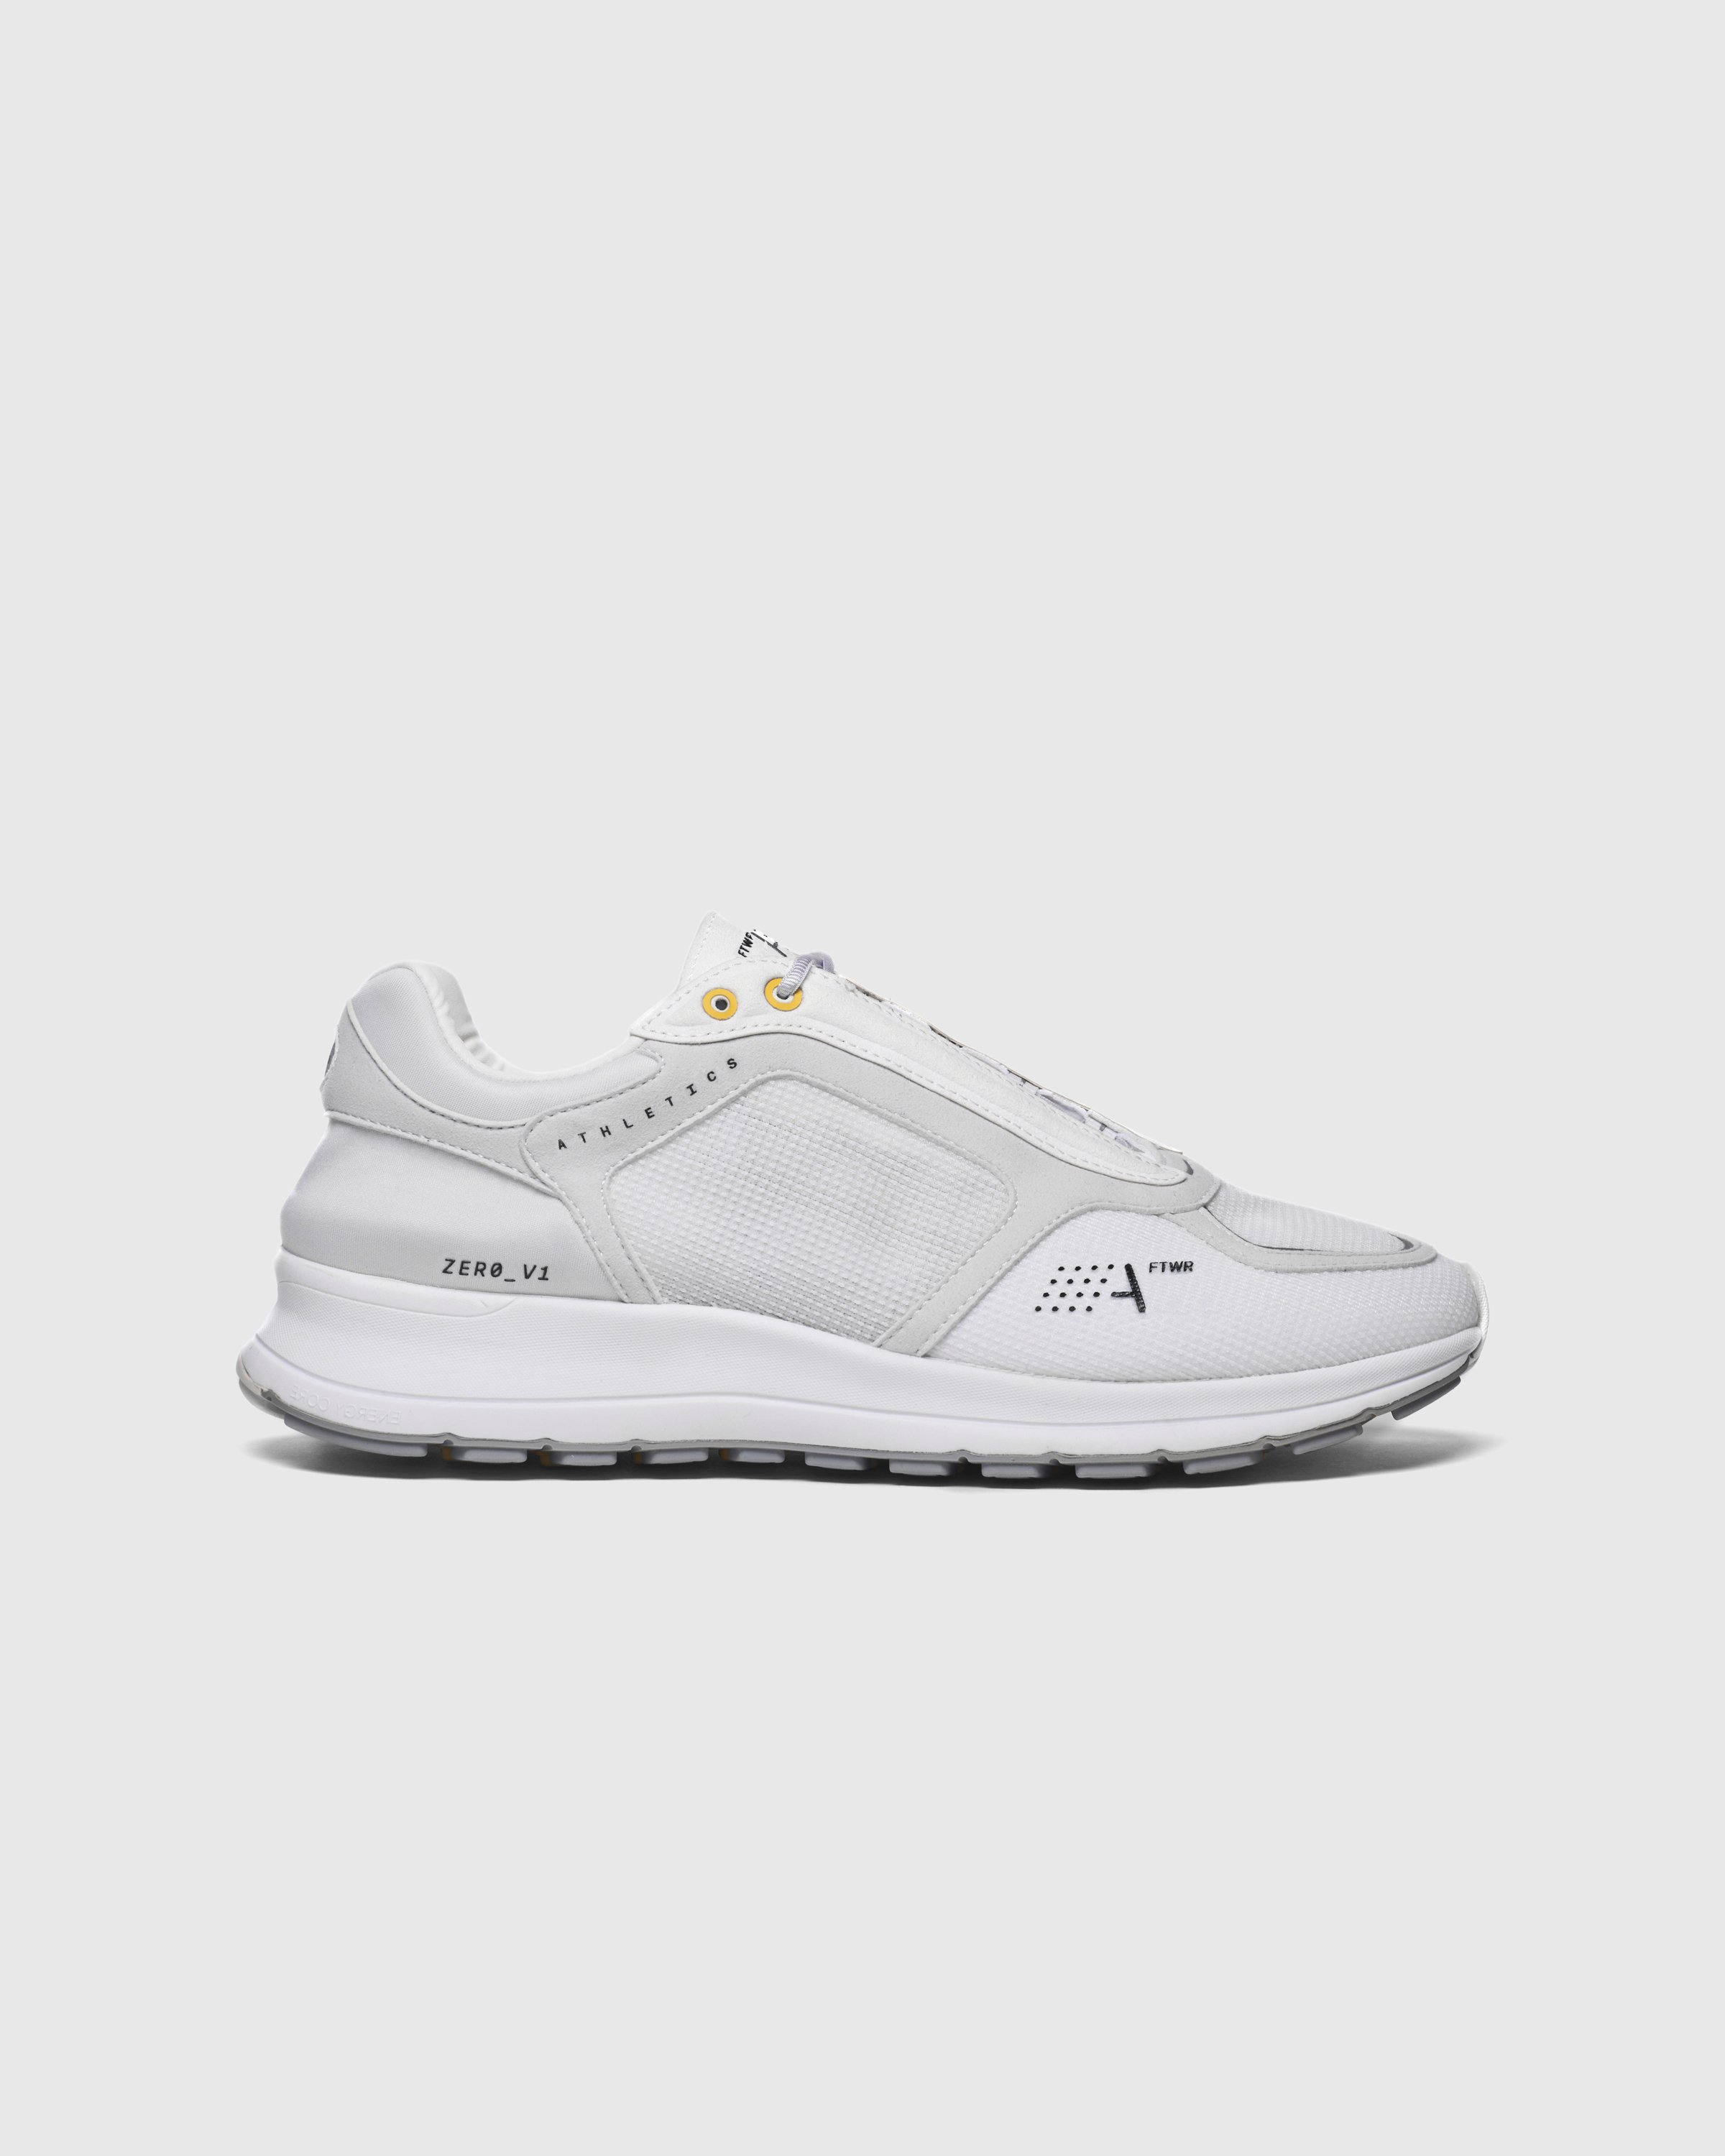 Athletics Footwear – Zero V1 White | Highsnobiety Shop